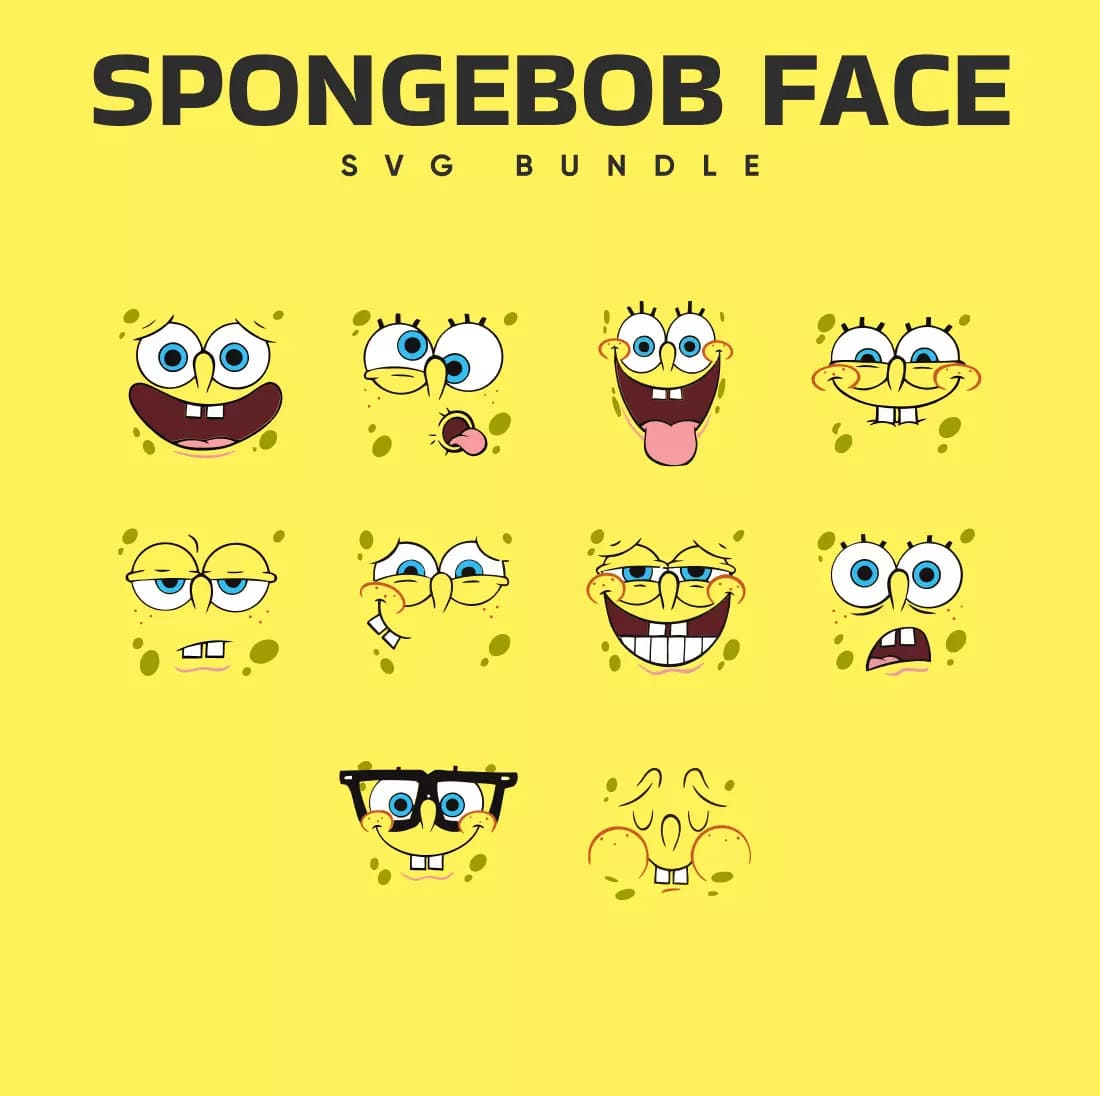 Spongebob Face SVG Bundle Preview.